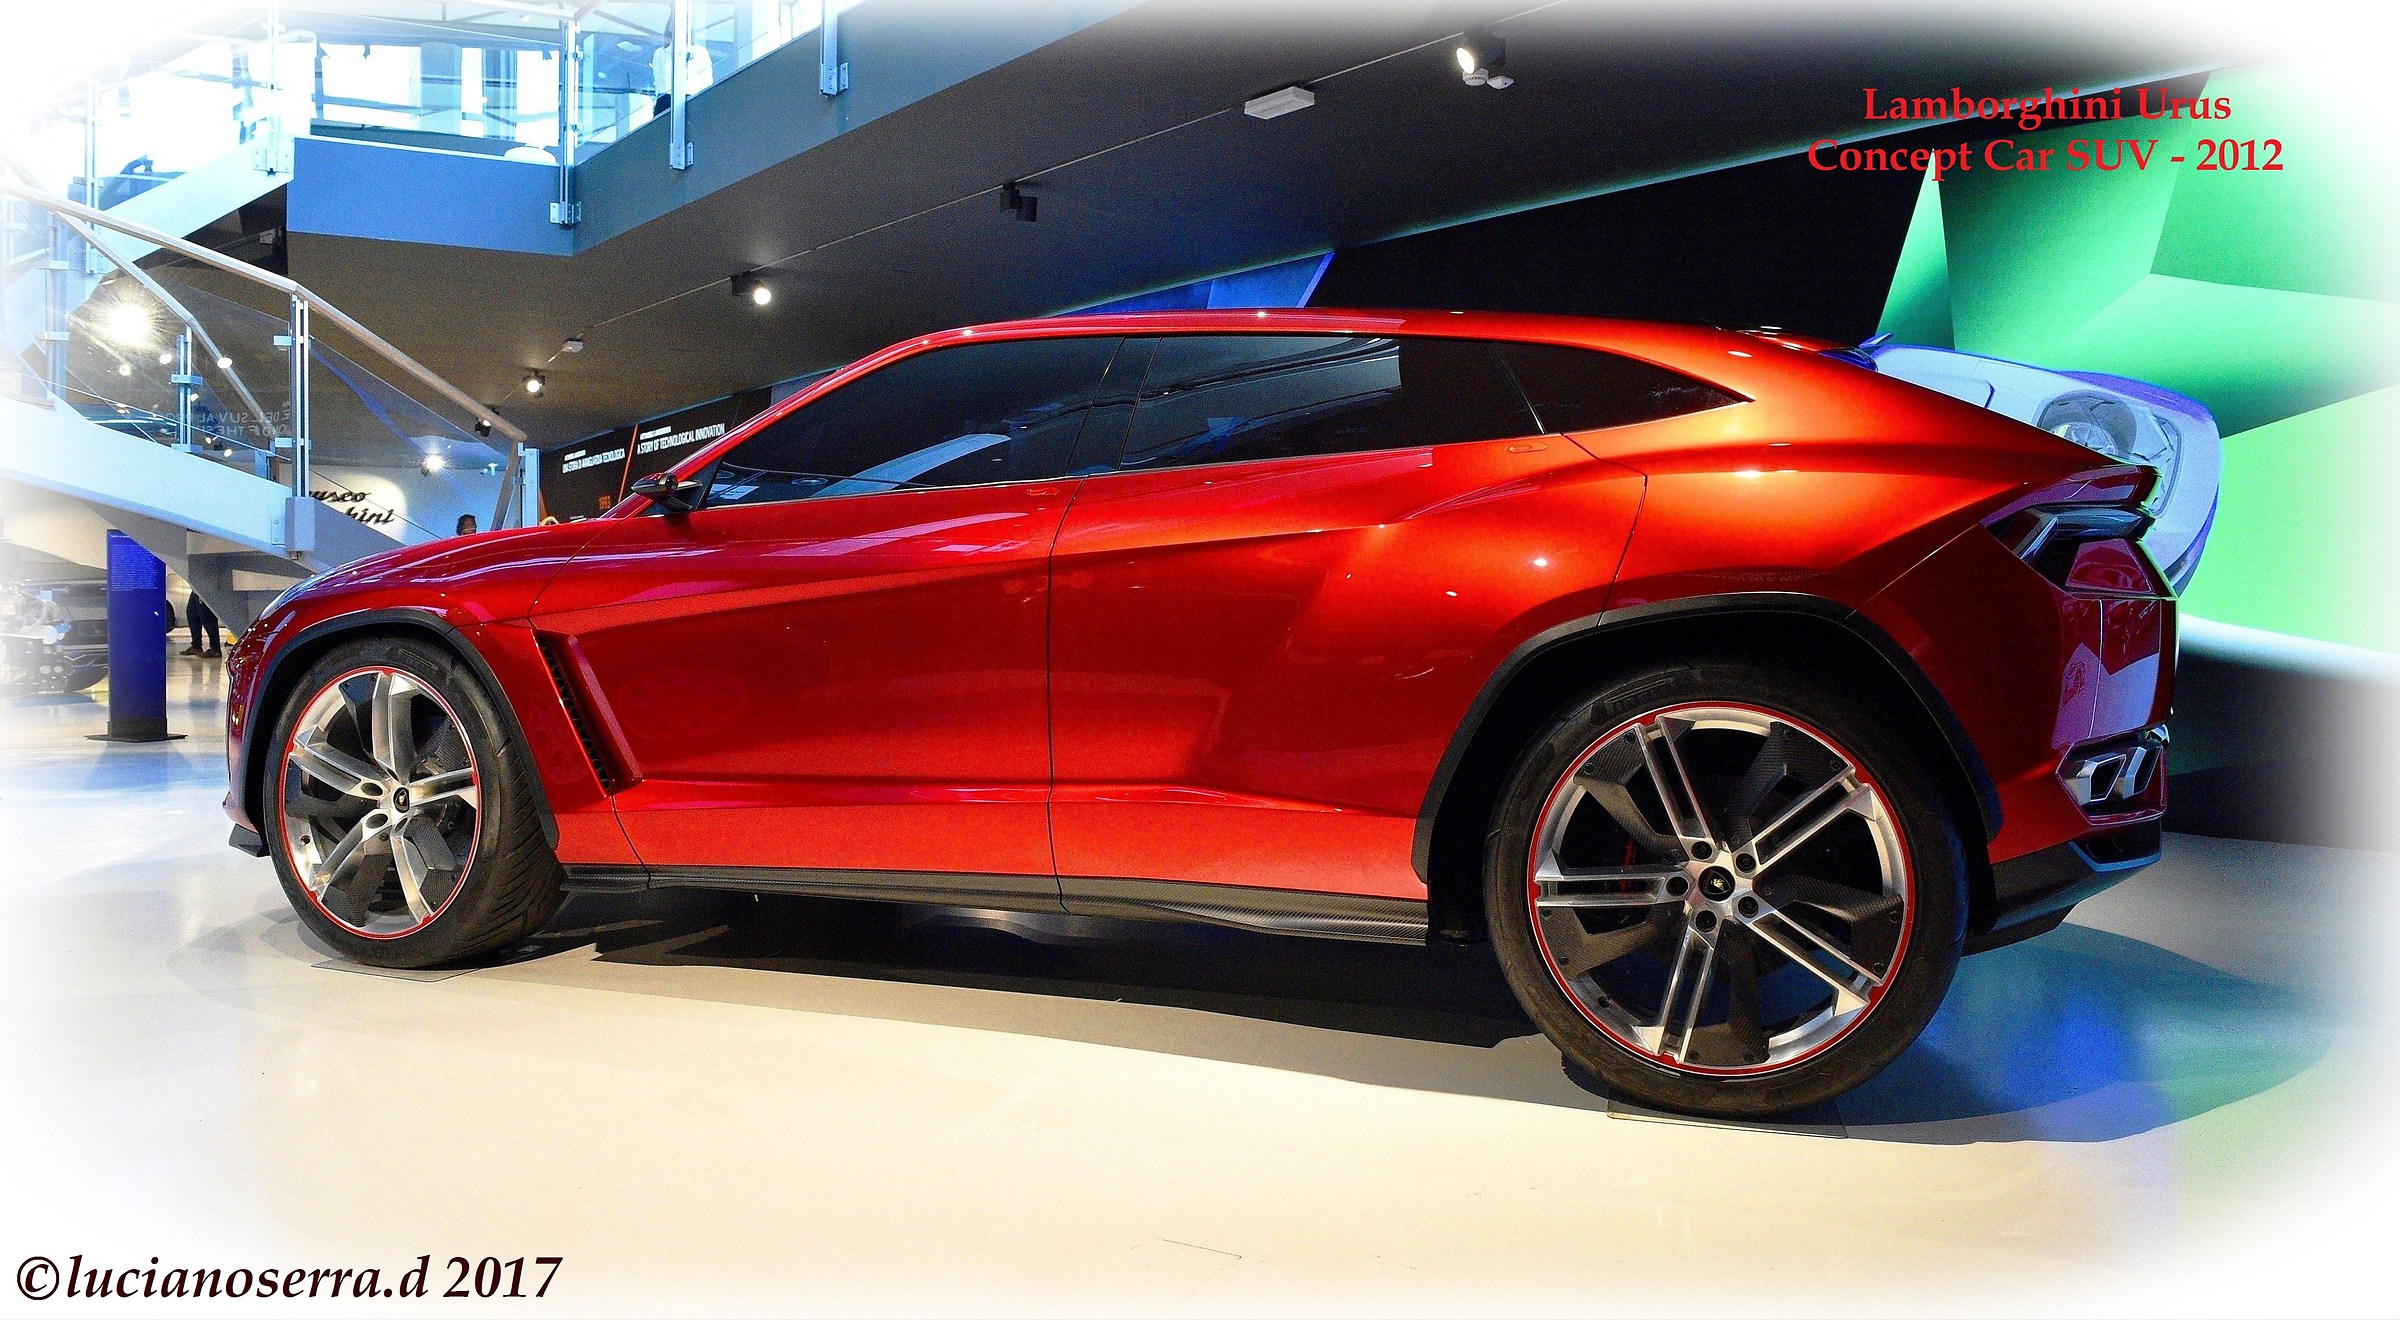 Lamborghini Urus SUV Concept Car - 2012...